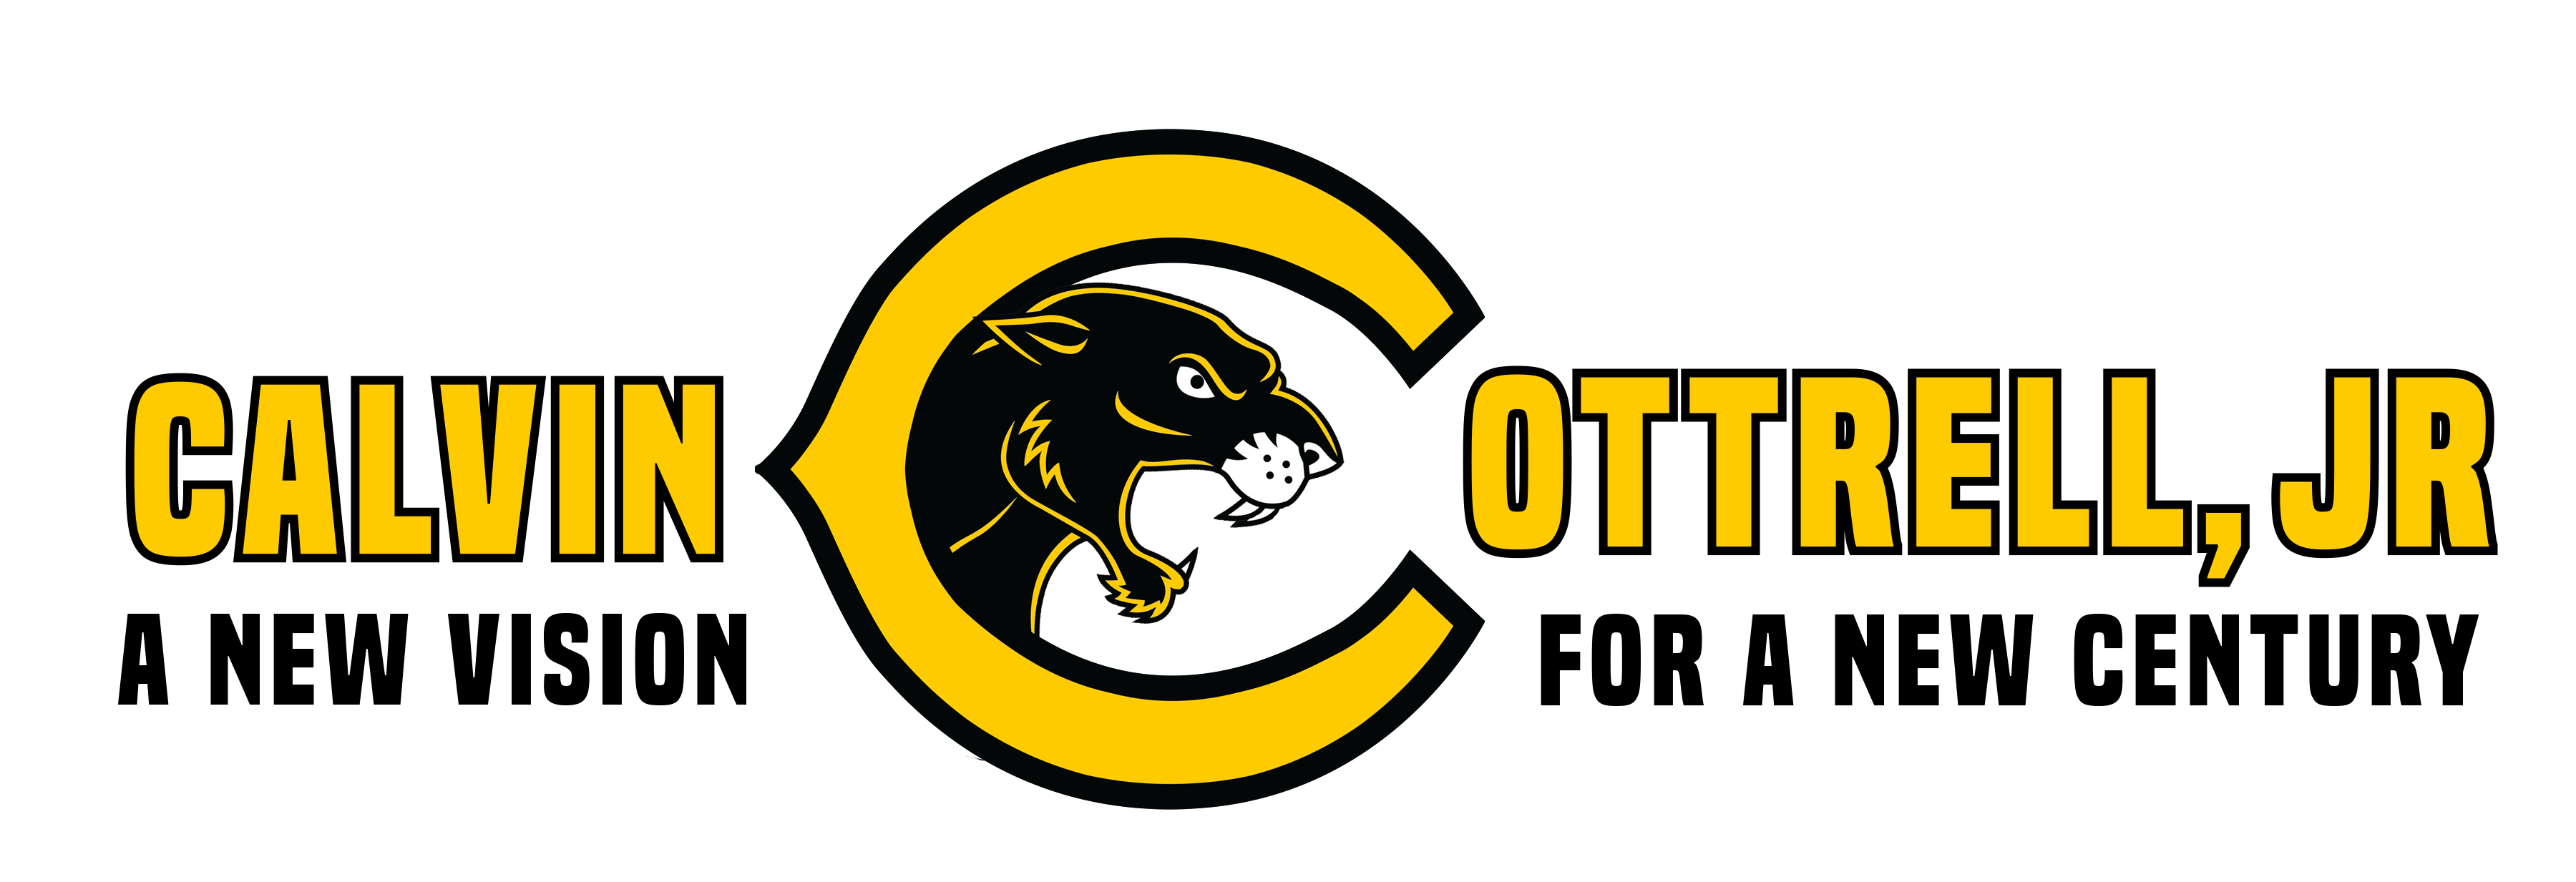 Calvin Cottrell, Jr logo